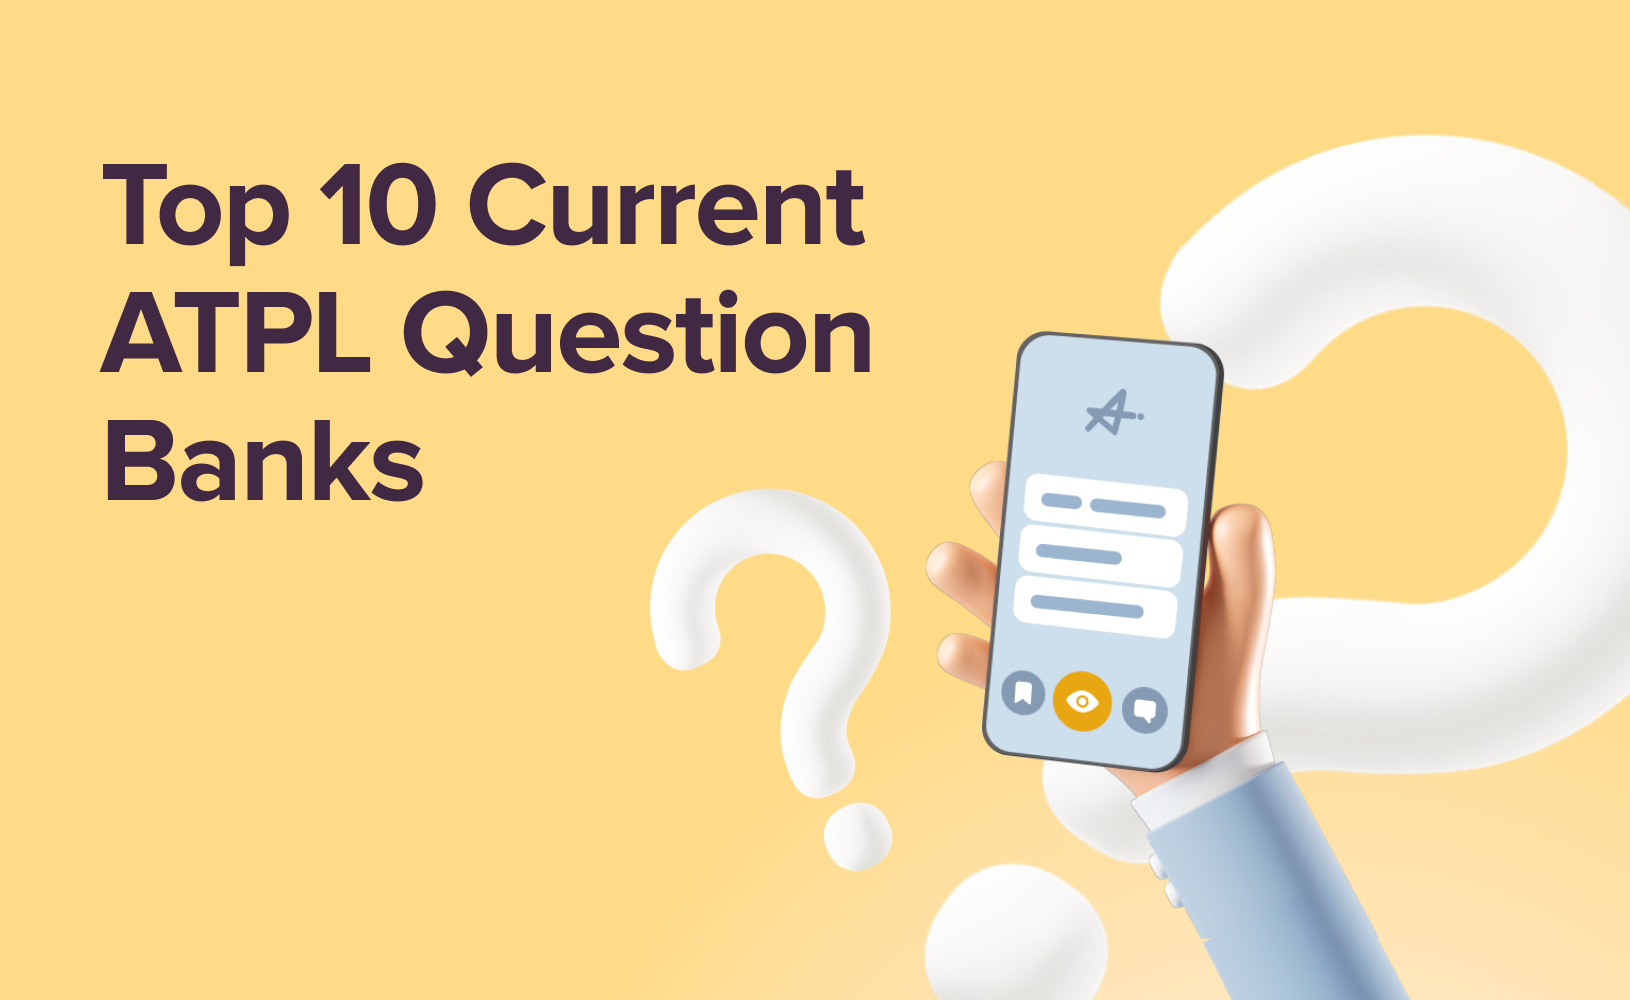 Top 10 Current ATPL Question Banks